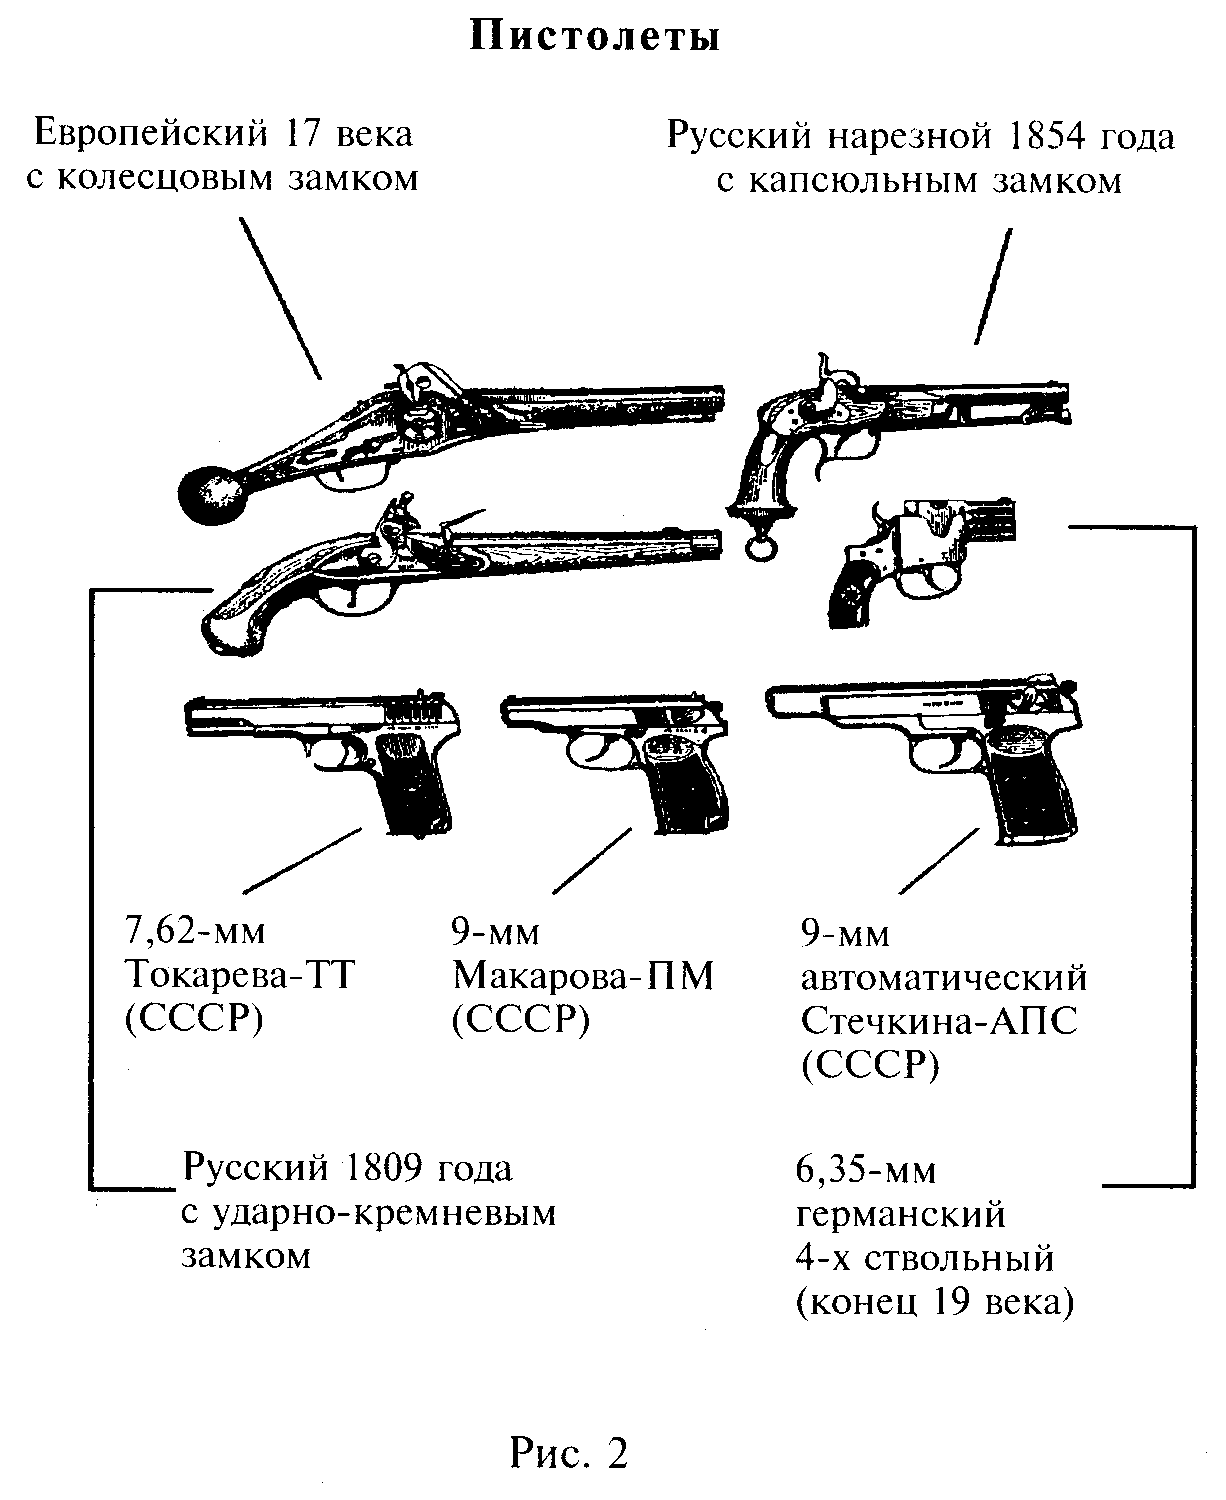 Схема классификации ручного огнестрельного оружия